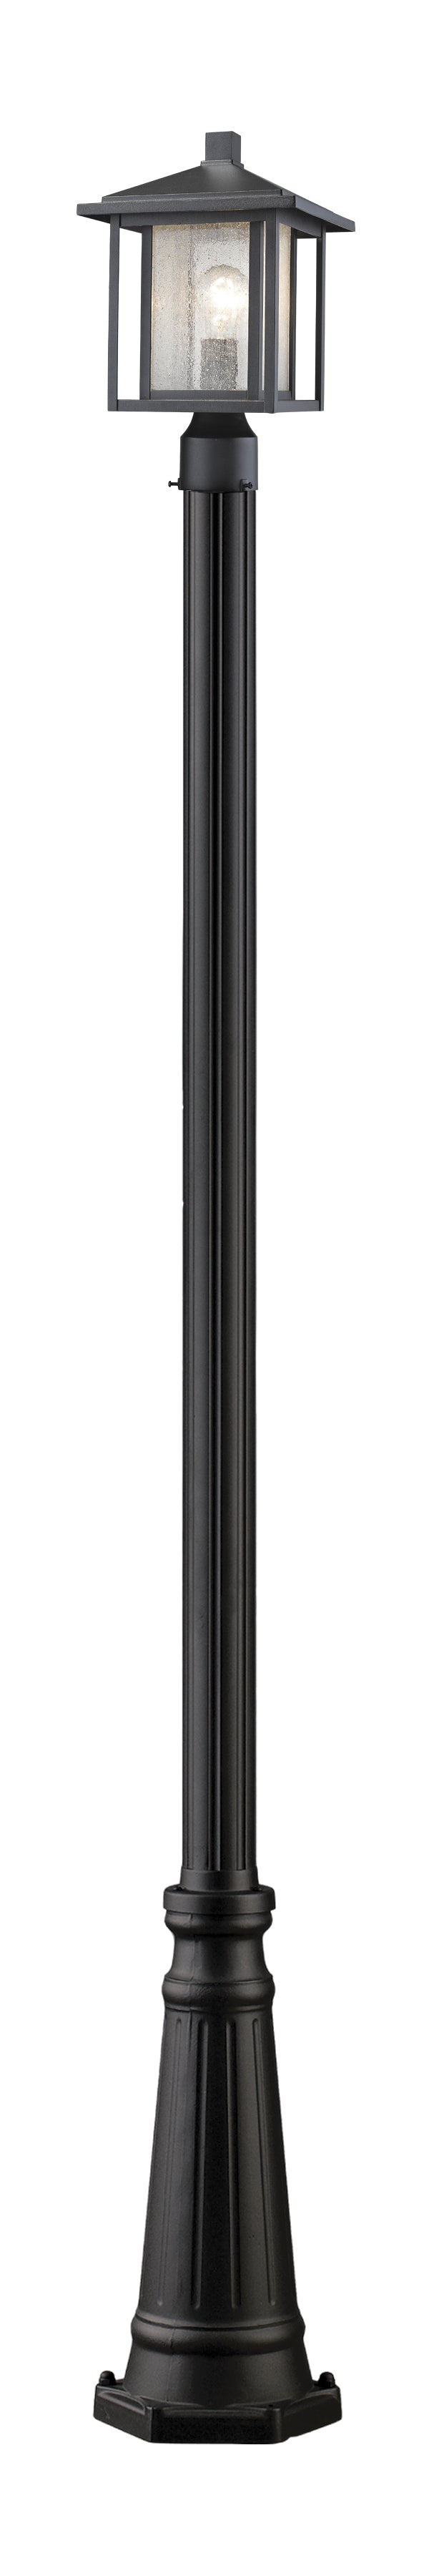 ASPEN Luminaire sur poteau Noir - 554PHM-519P-BK | Z-LITE